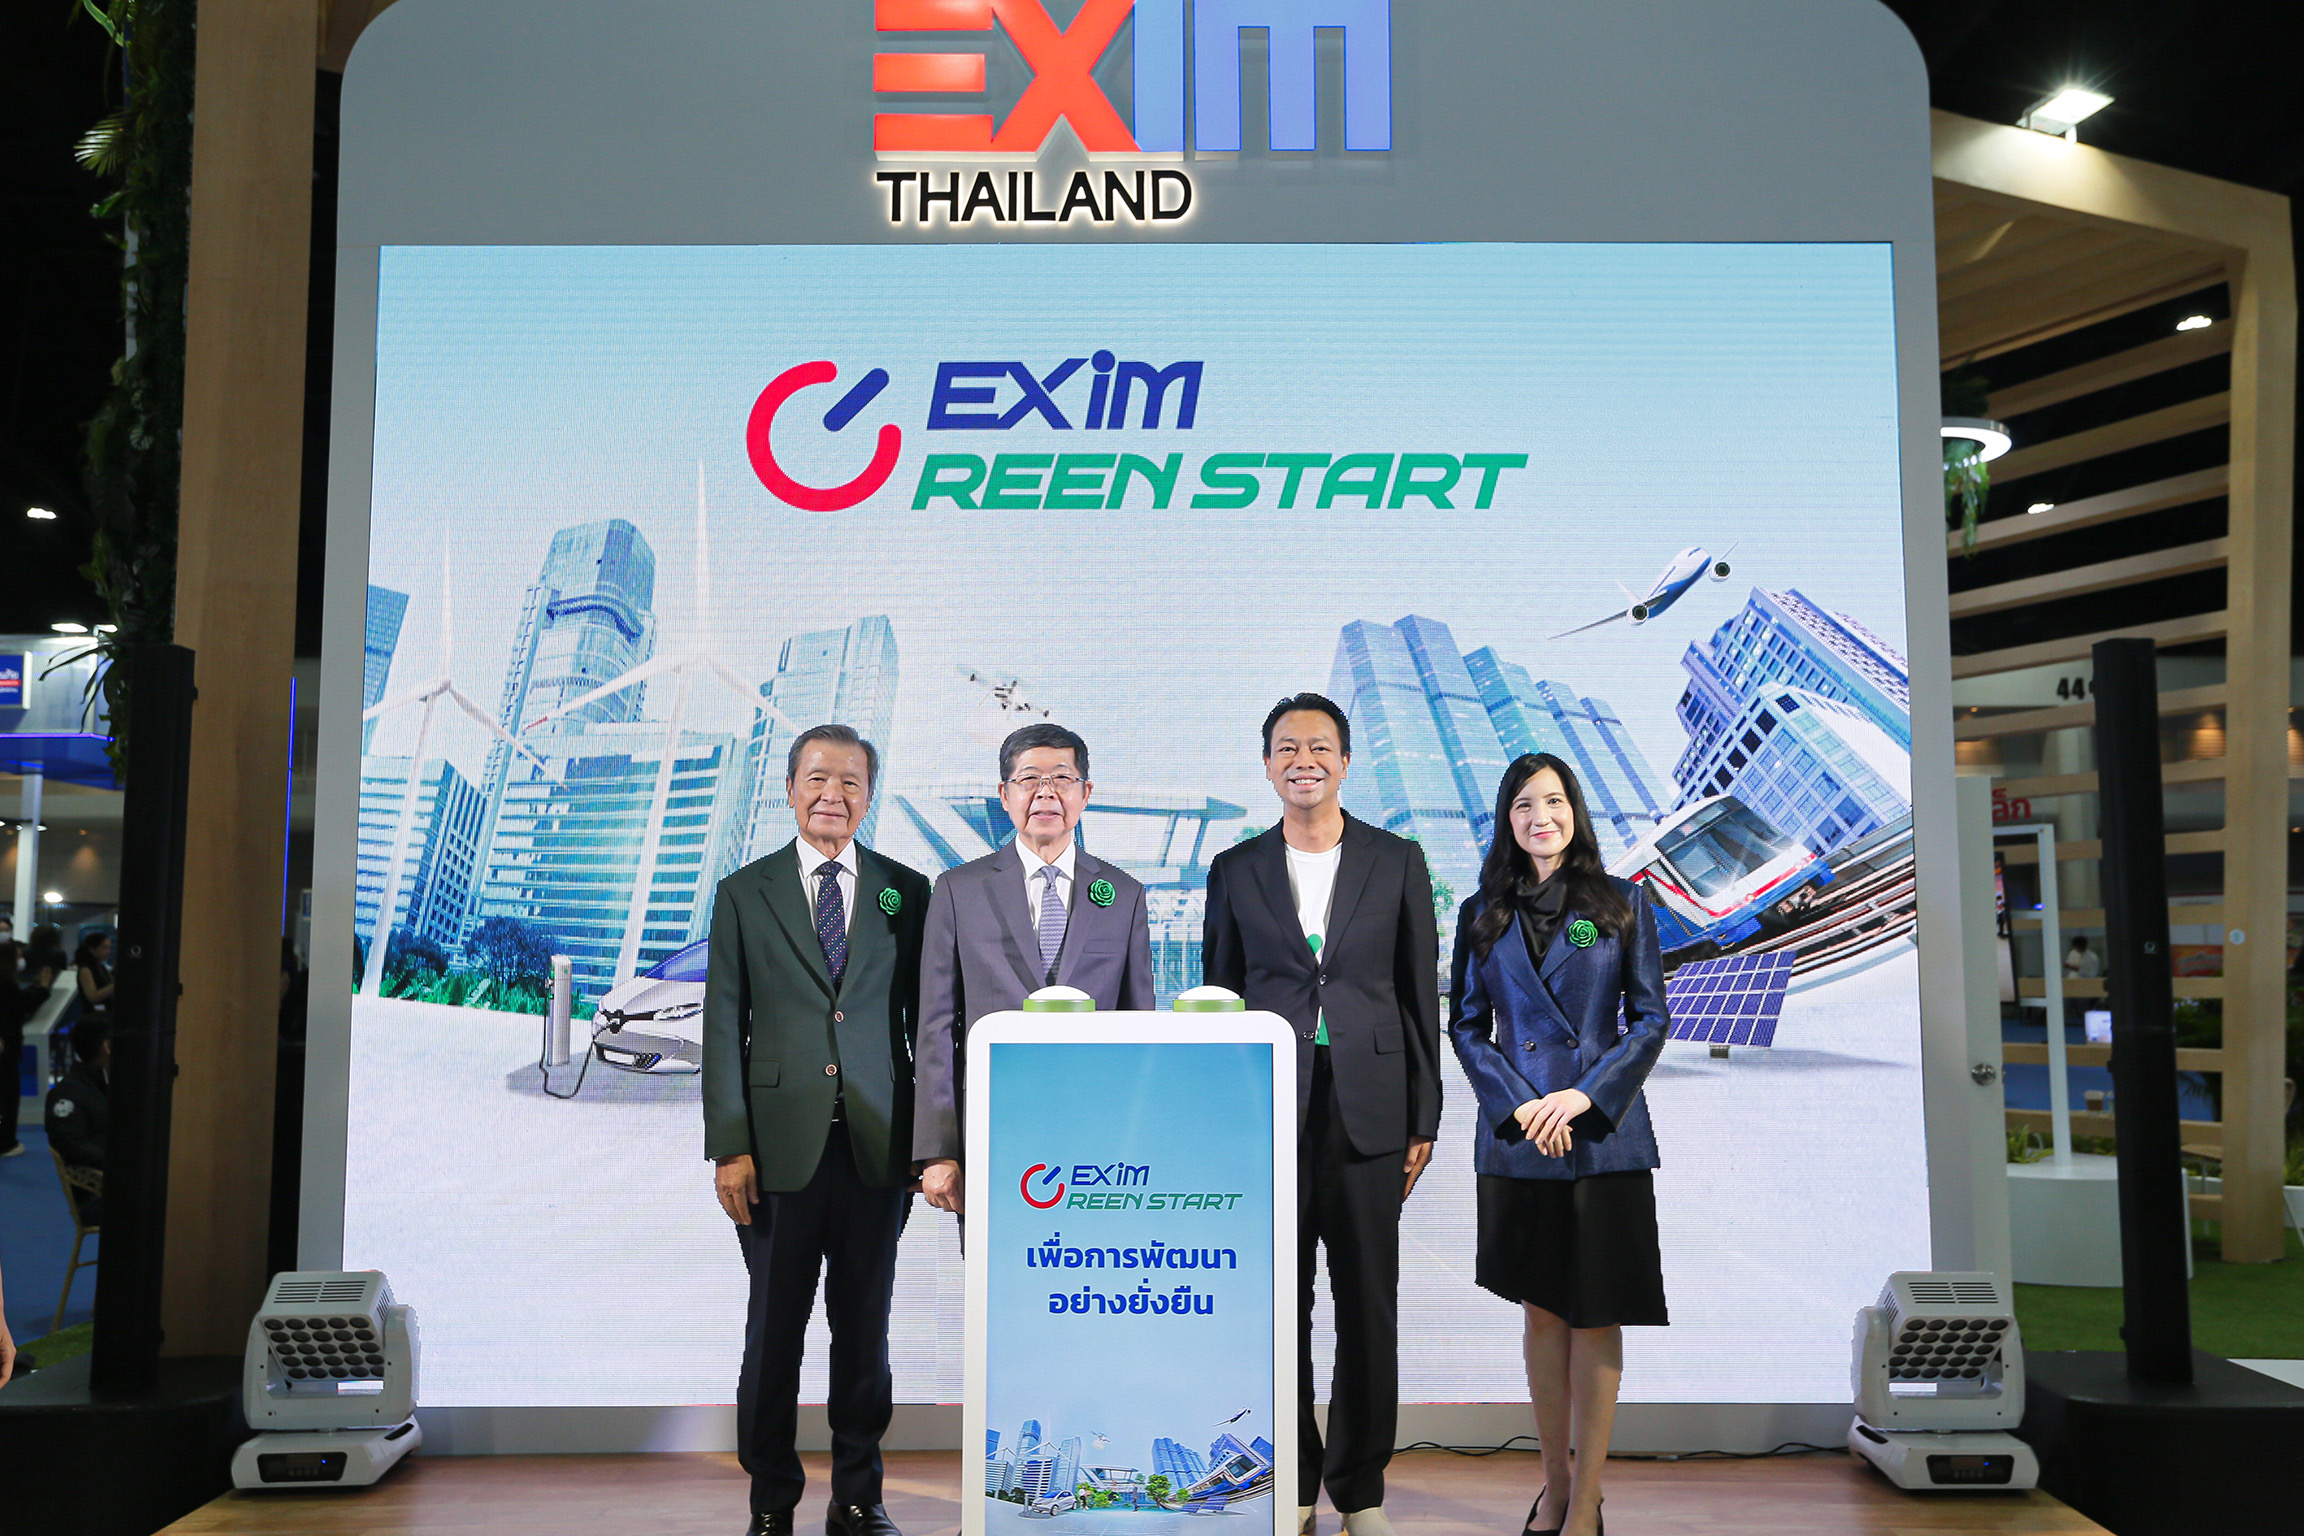 EXIM BANK ร่วมออกบูทในงานมหกรรมการเงินกรุงเทพ ครั้งที่ 23